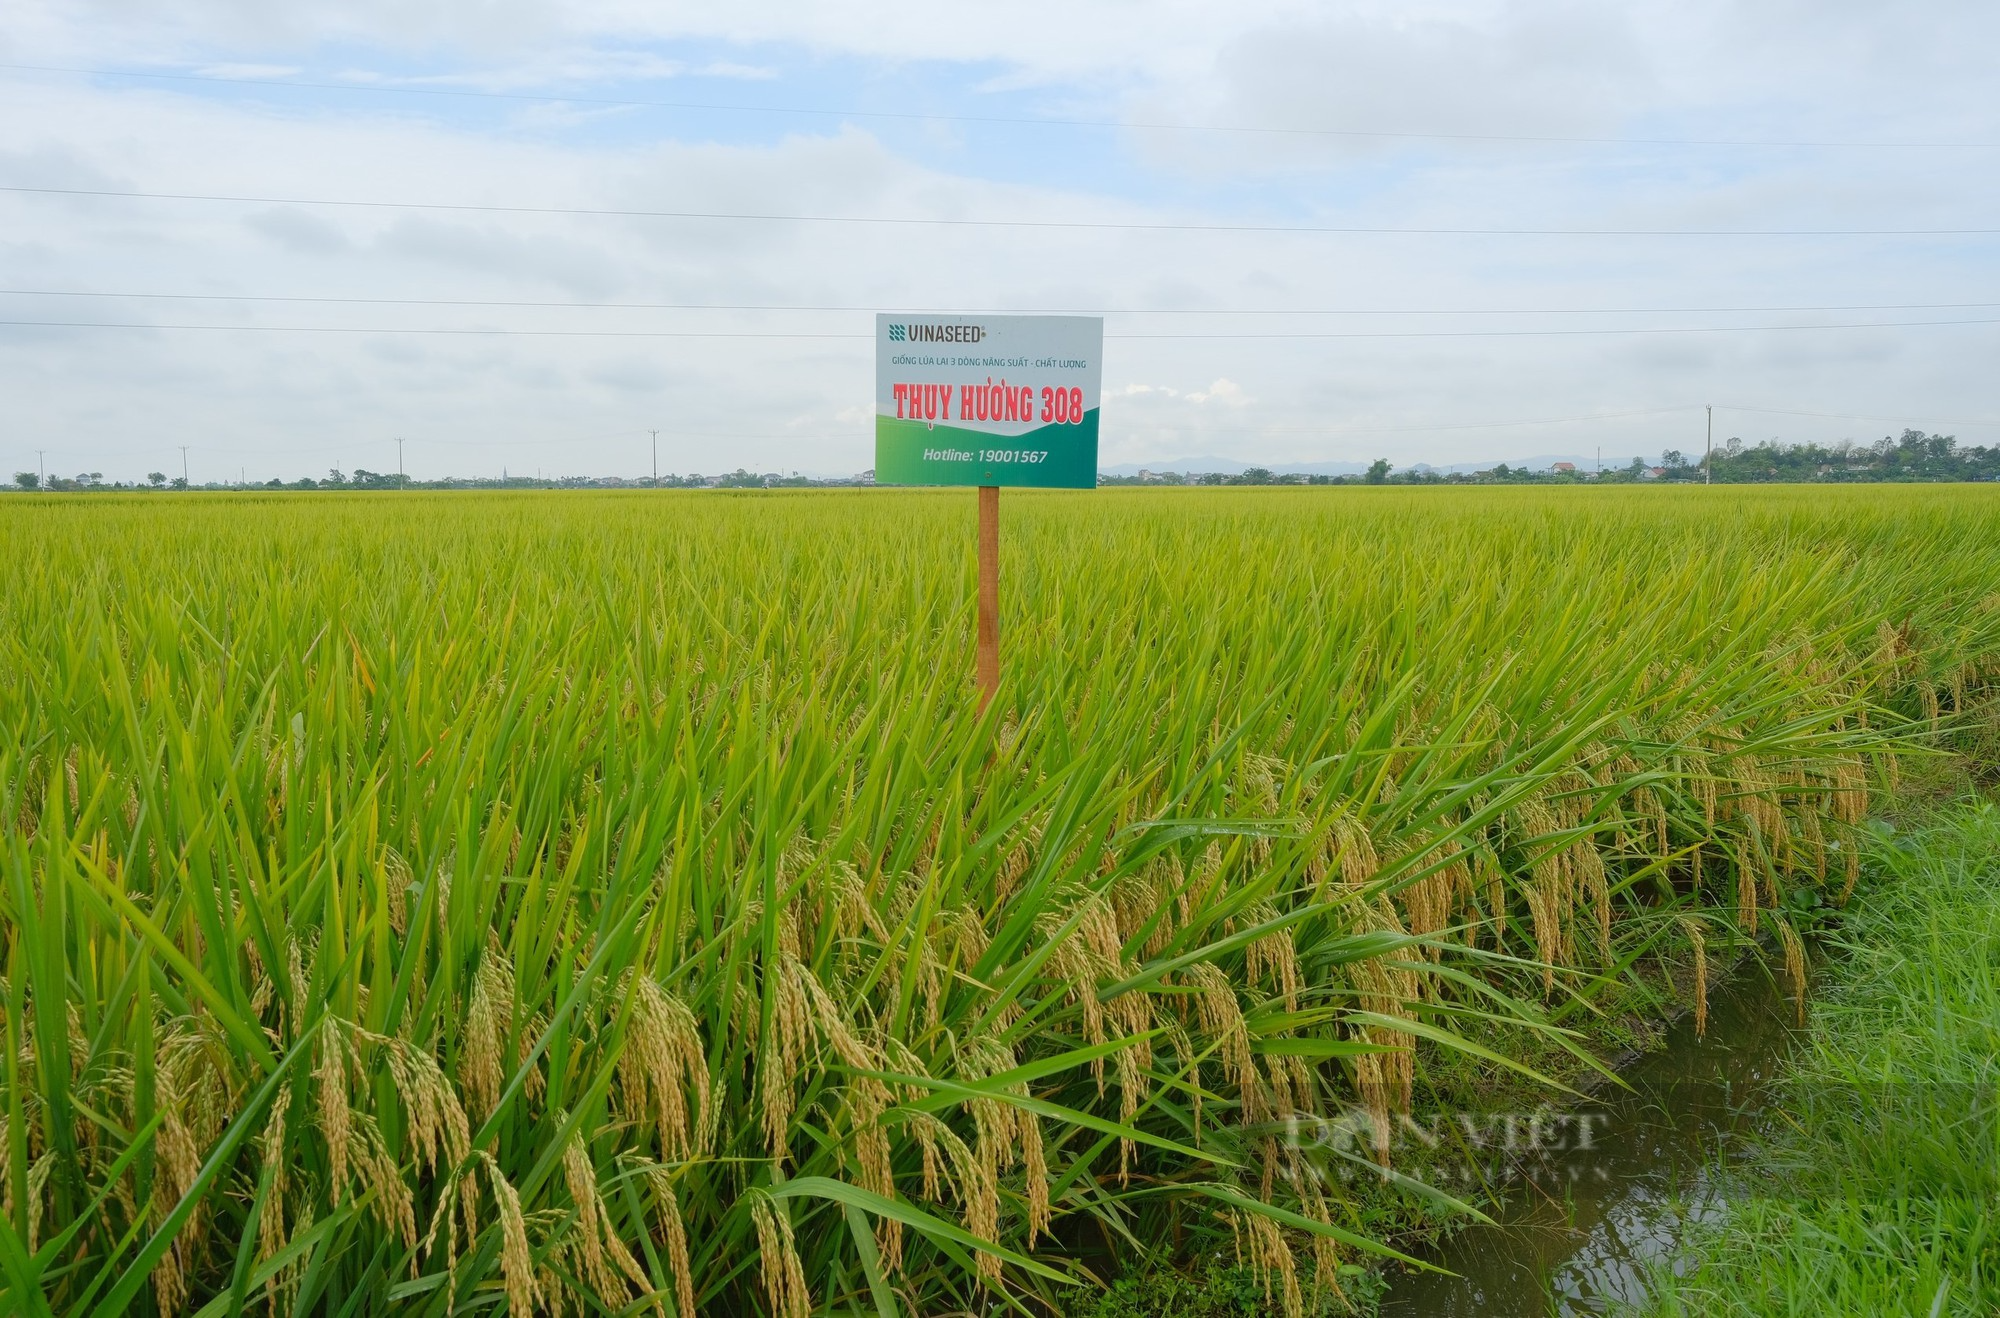 Thụy Hương 308 của Vinaseed khiến nông dân ở huyện Yên Thành, tỉnh Nghệ An bất ngờ khi đẻ khỏe, bông dài, hạt chắc - Ảnh 10.